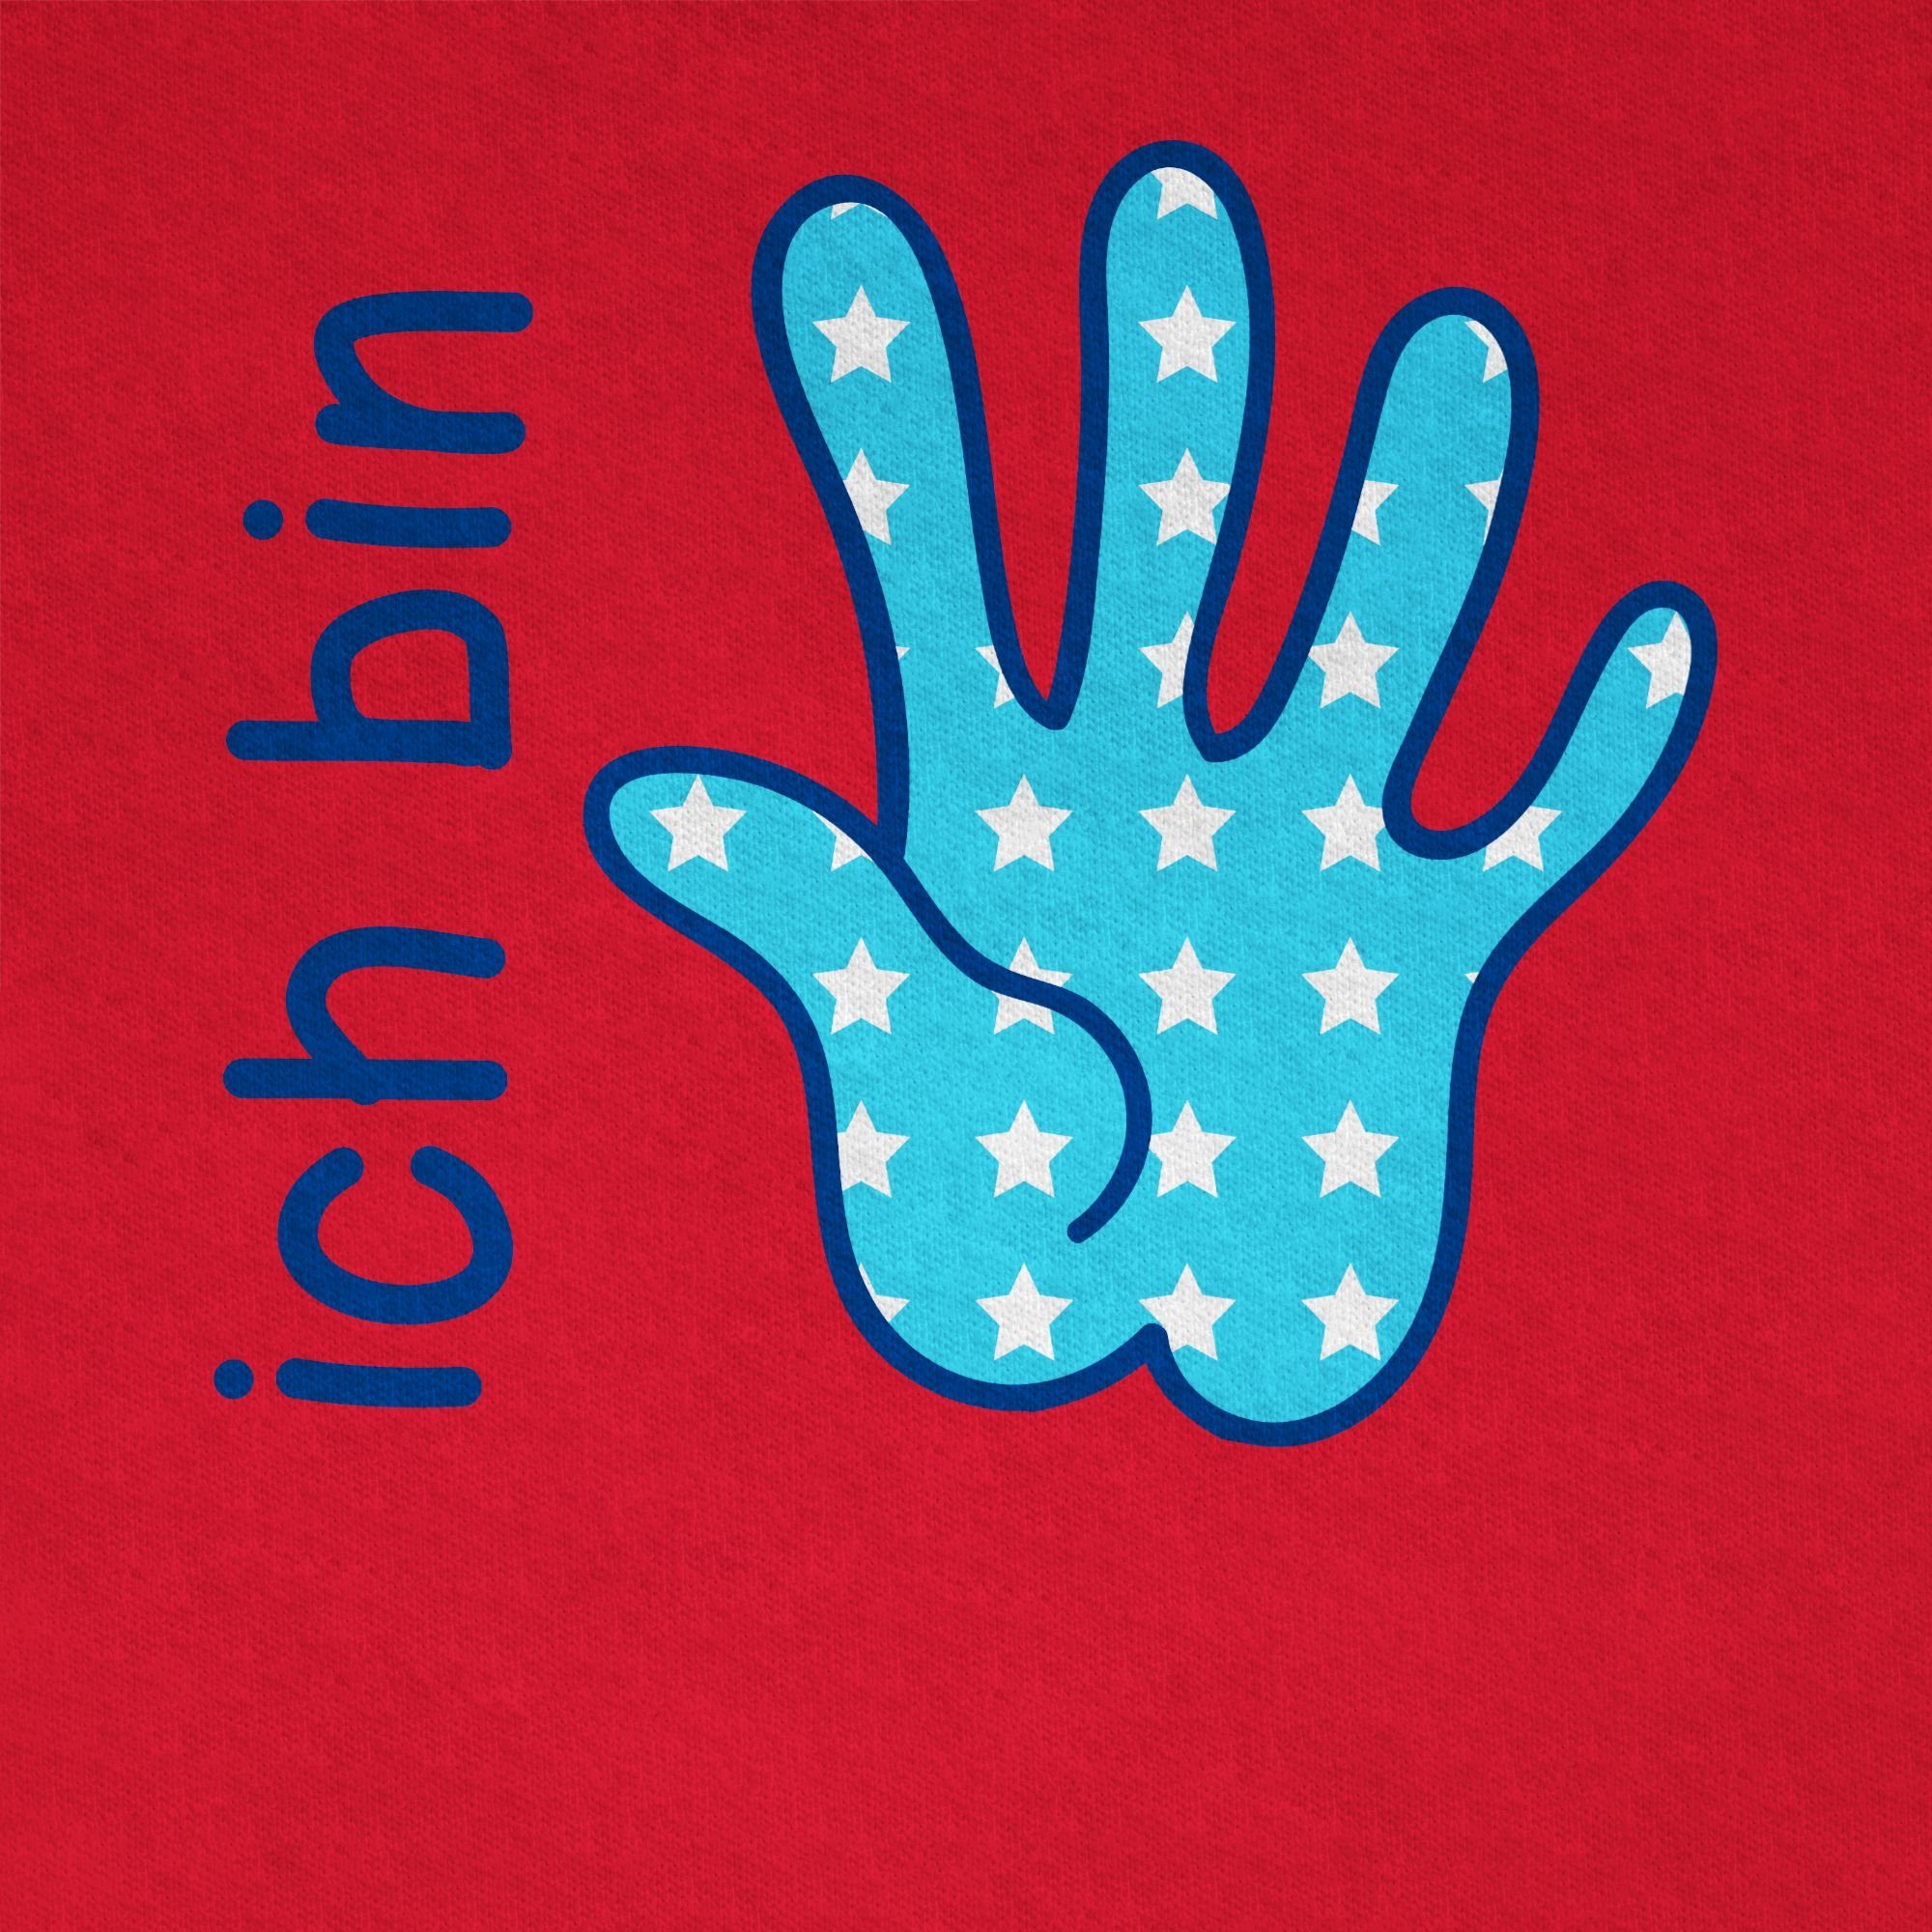 Shirtracer T-Shirt Ich 2 blau Zeichensprache Rot 5. fünf bin Geburtstag